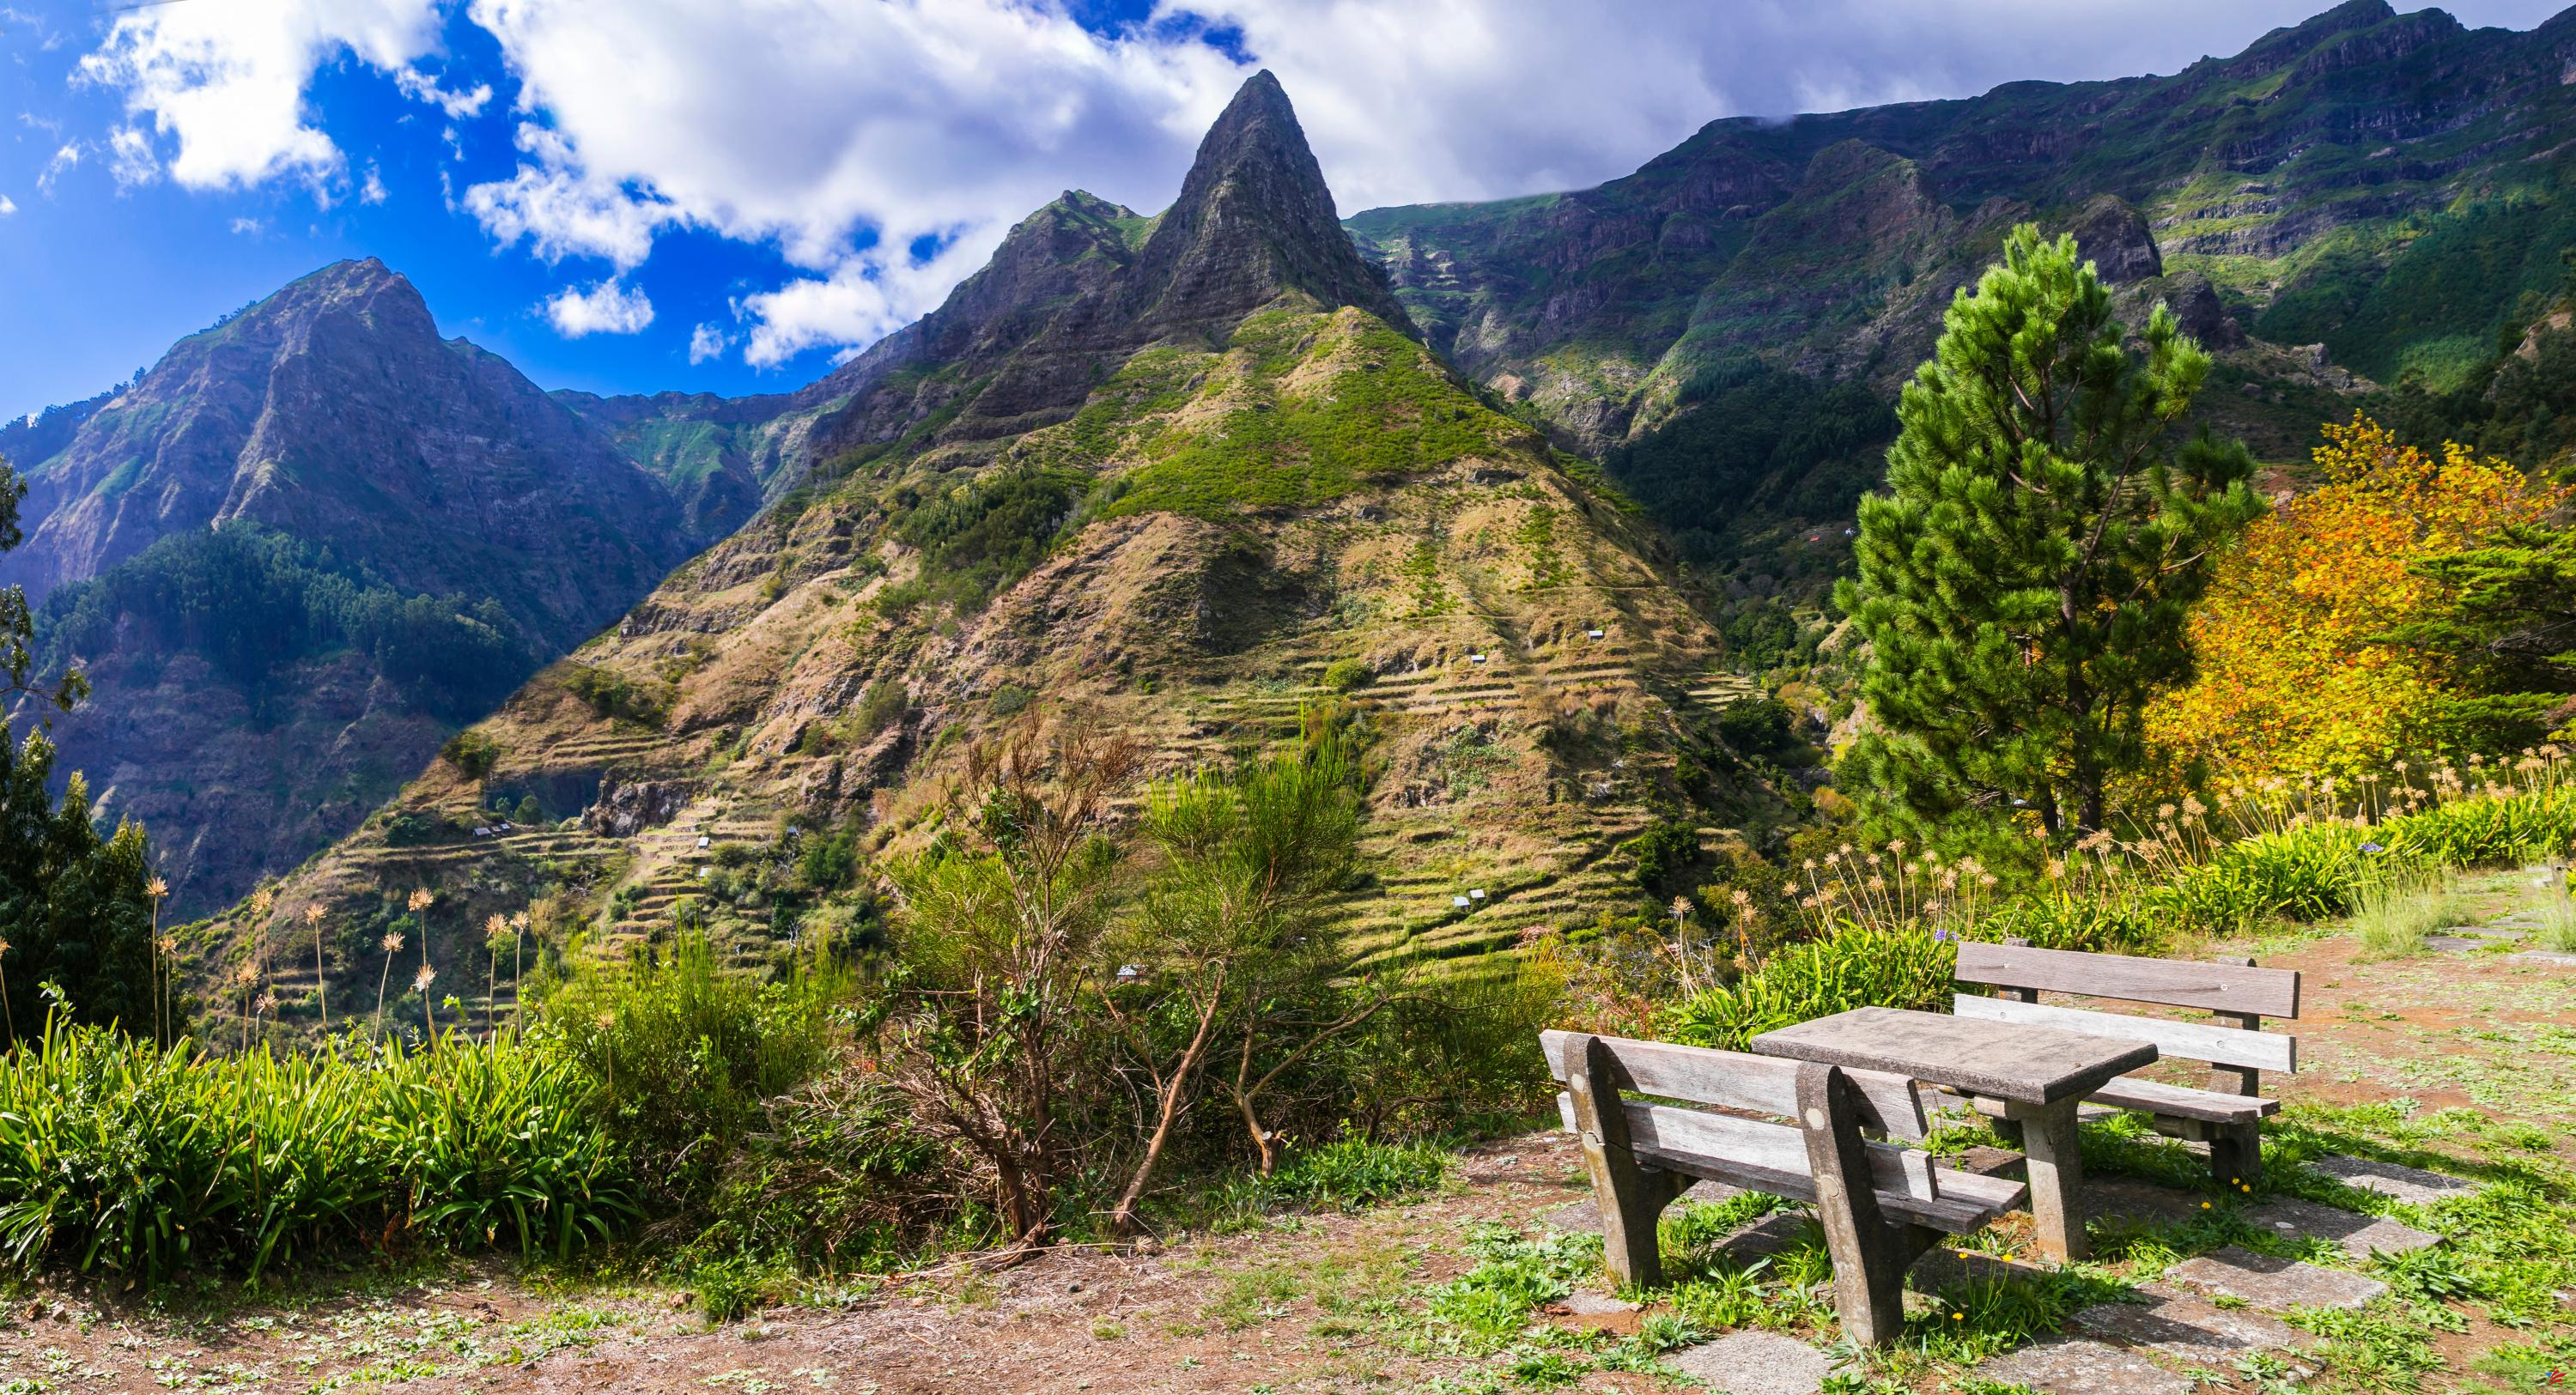 Preocupante desaparición en Madeira: una pareja francesa imposible de rastrear tras un viaje de senderismo